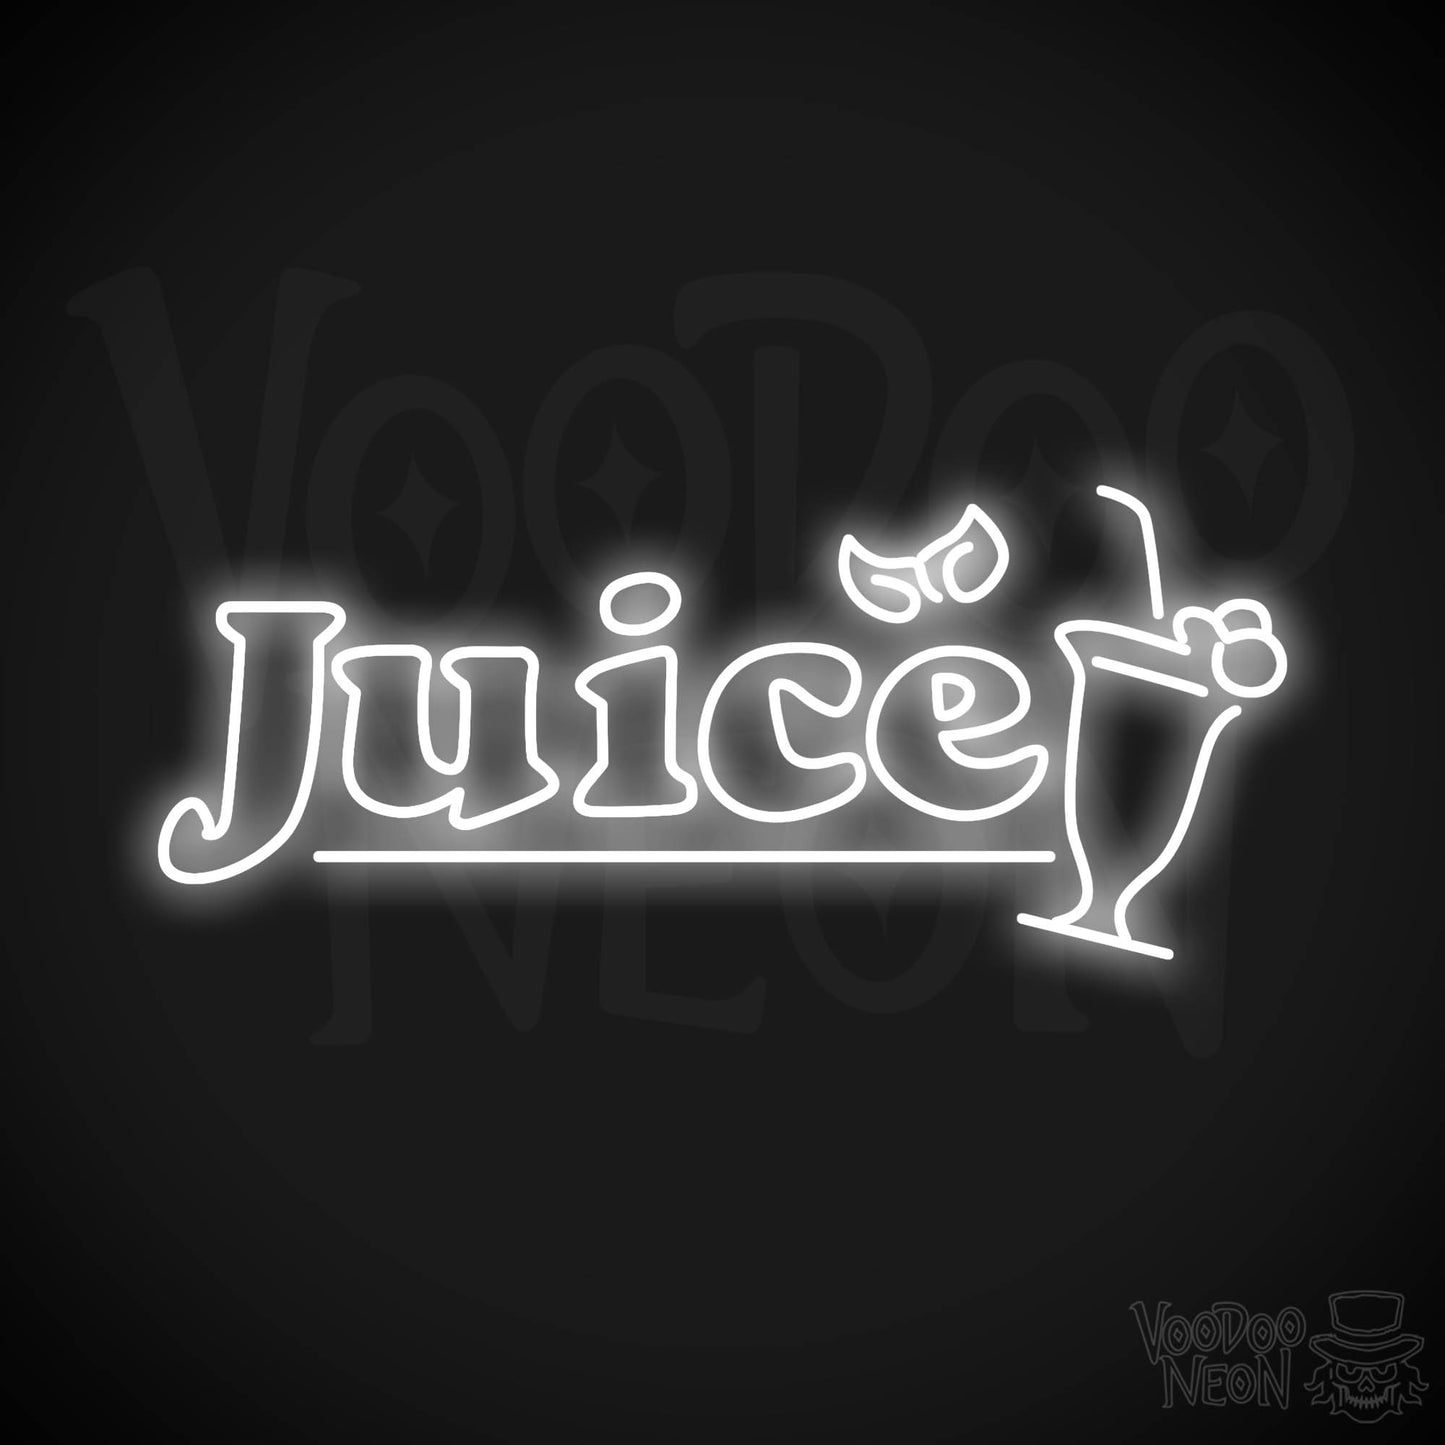 Juice LED Neon - White